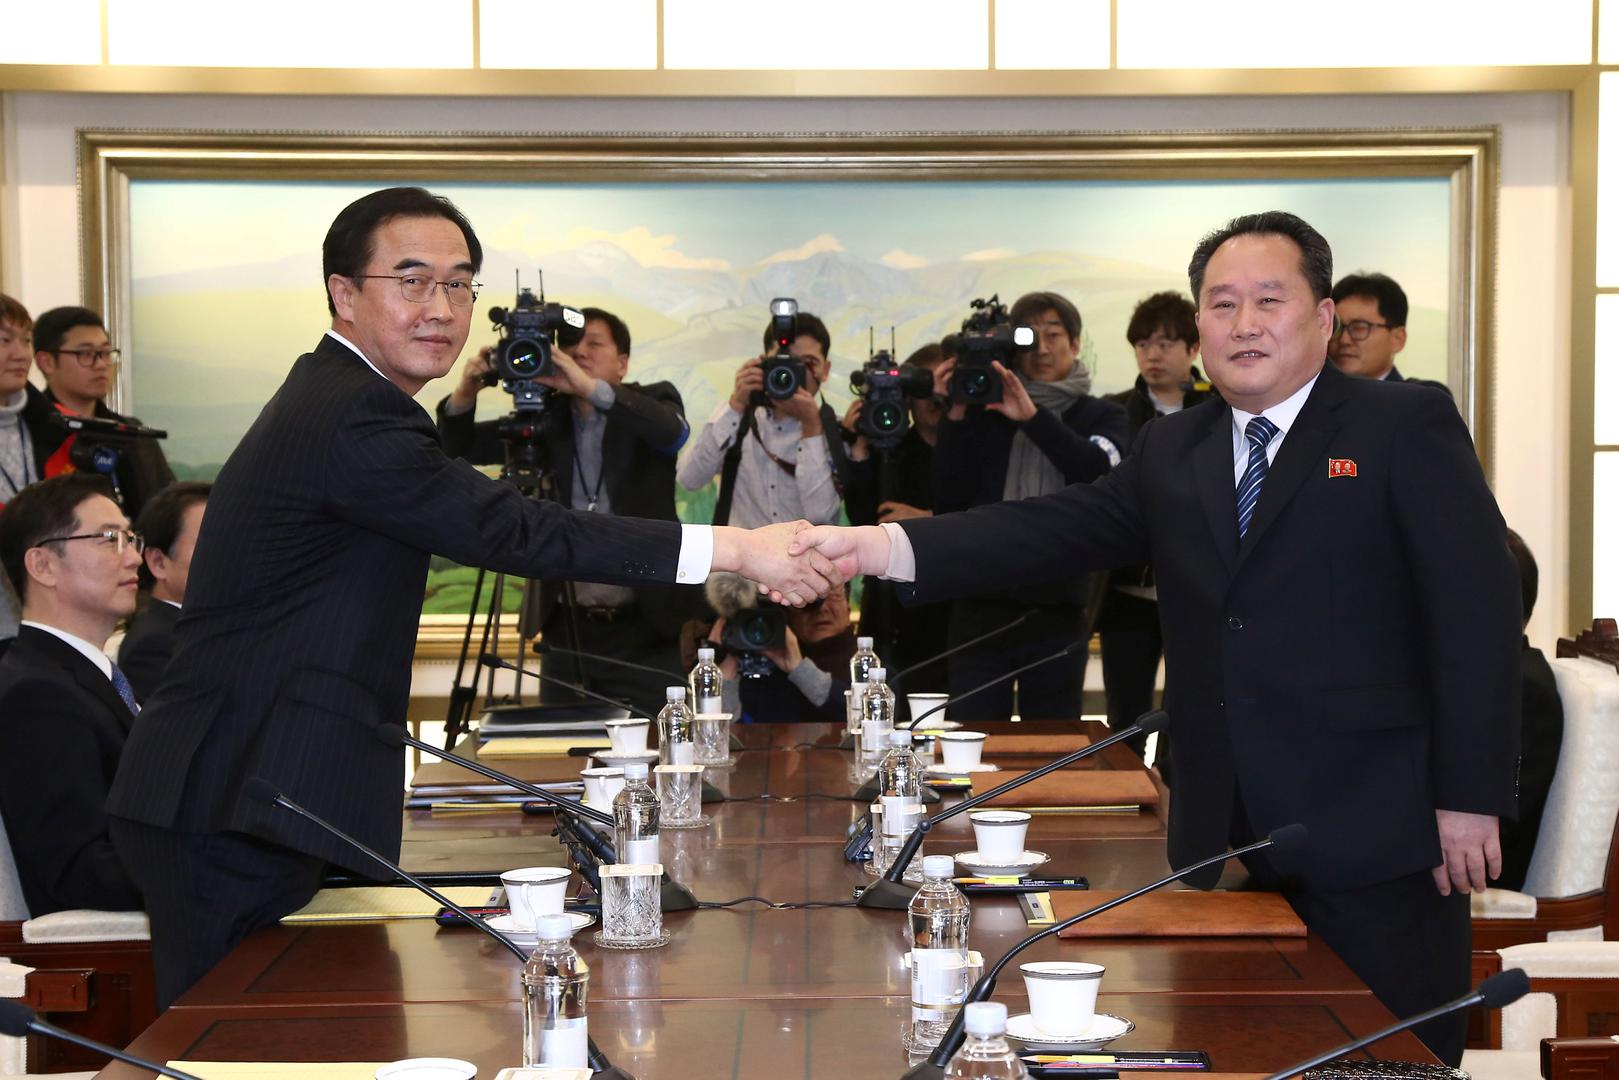 Šef južnokorejske delegacije Cho Myoung-gyon i njegov sjevernokorejski kolega Ri Son Gwon